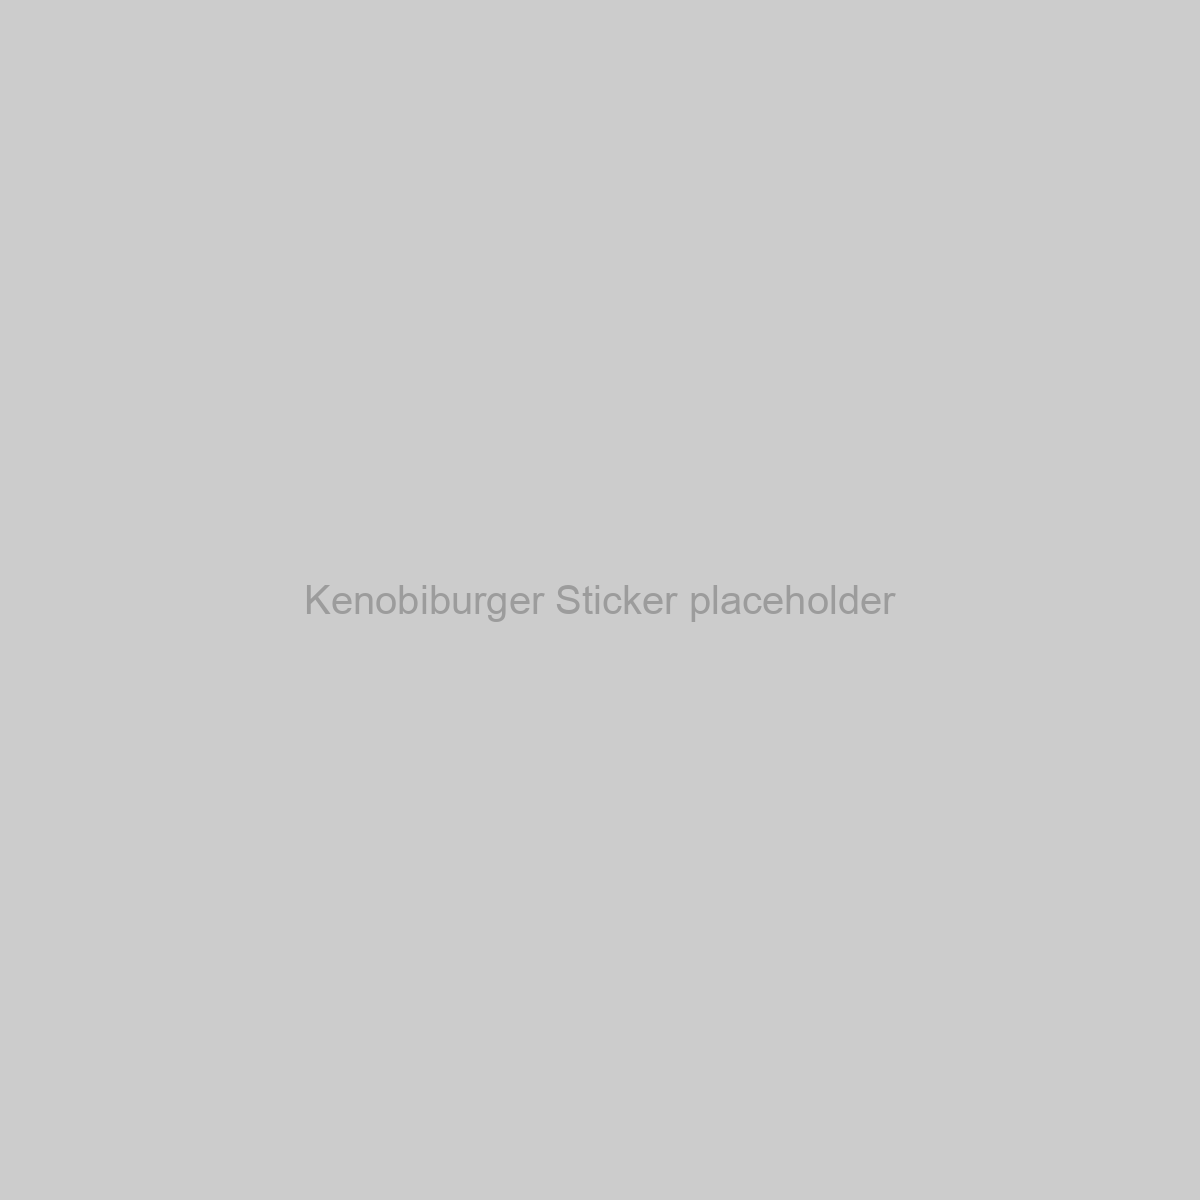 Kenobiburger Sticker Placeholder Image